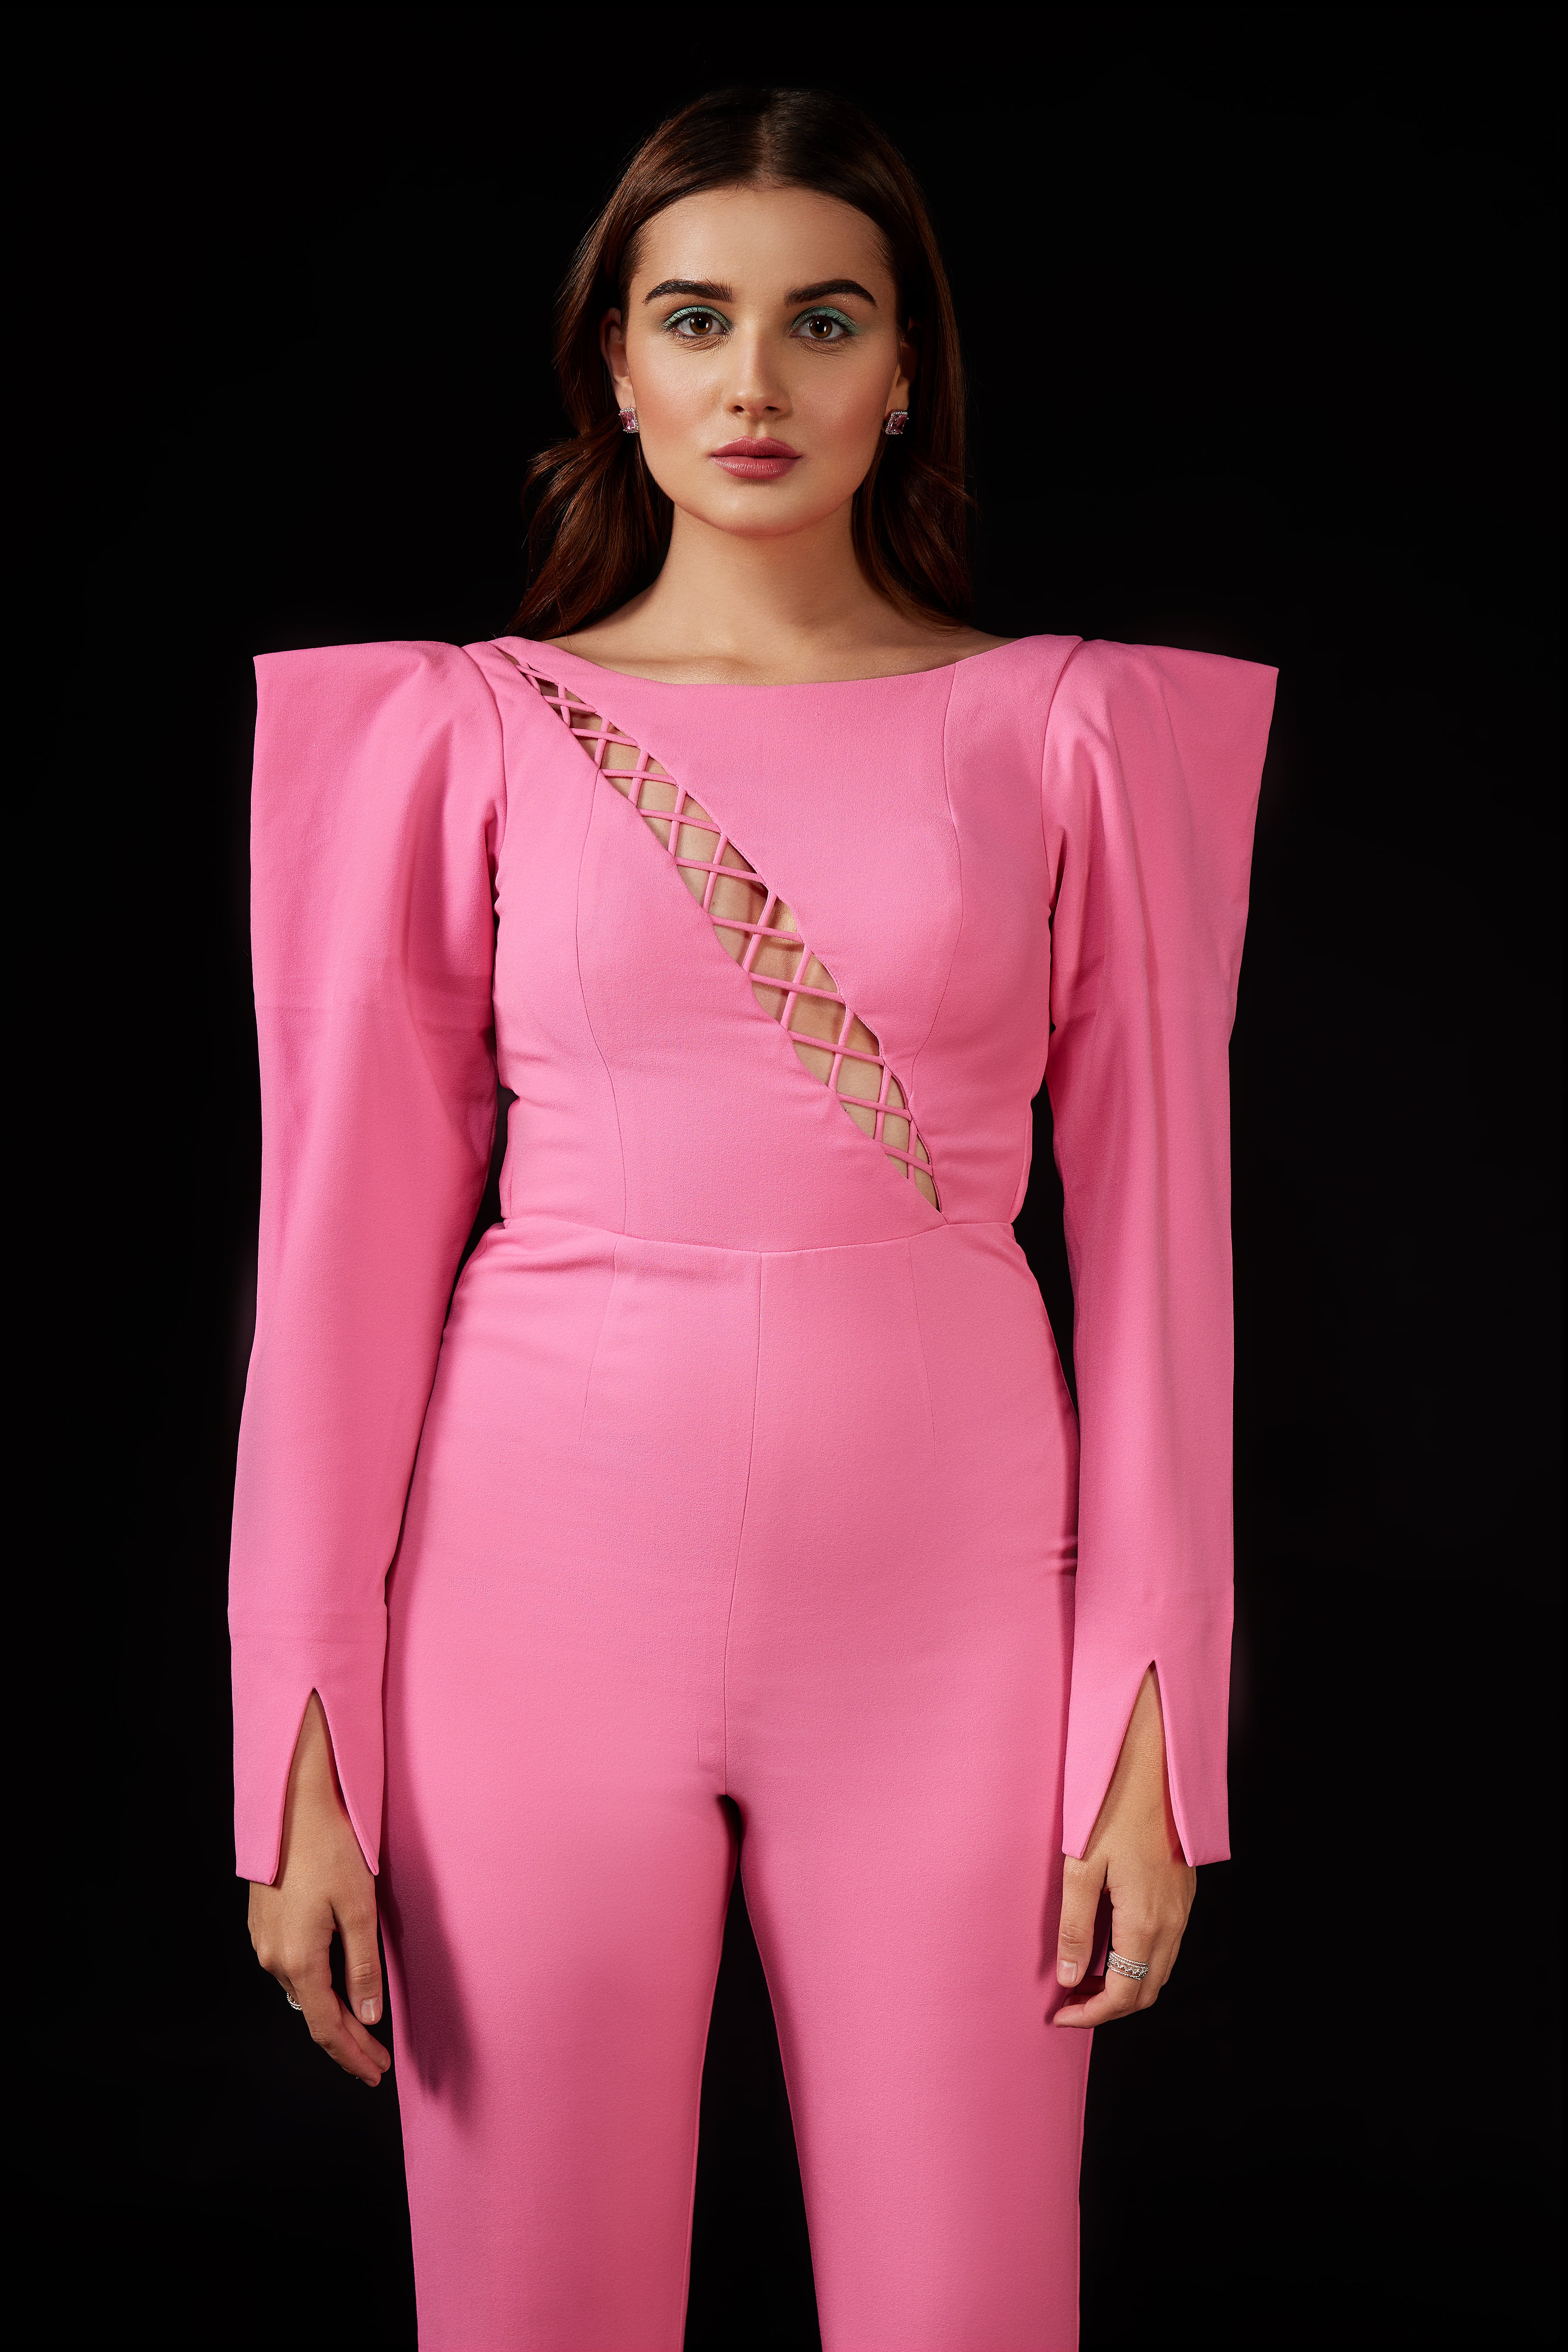 Pink Jumpsuit Earrings - Buy Pink Jumpsuit Earrings online in India